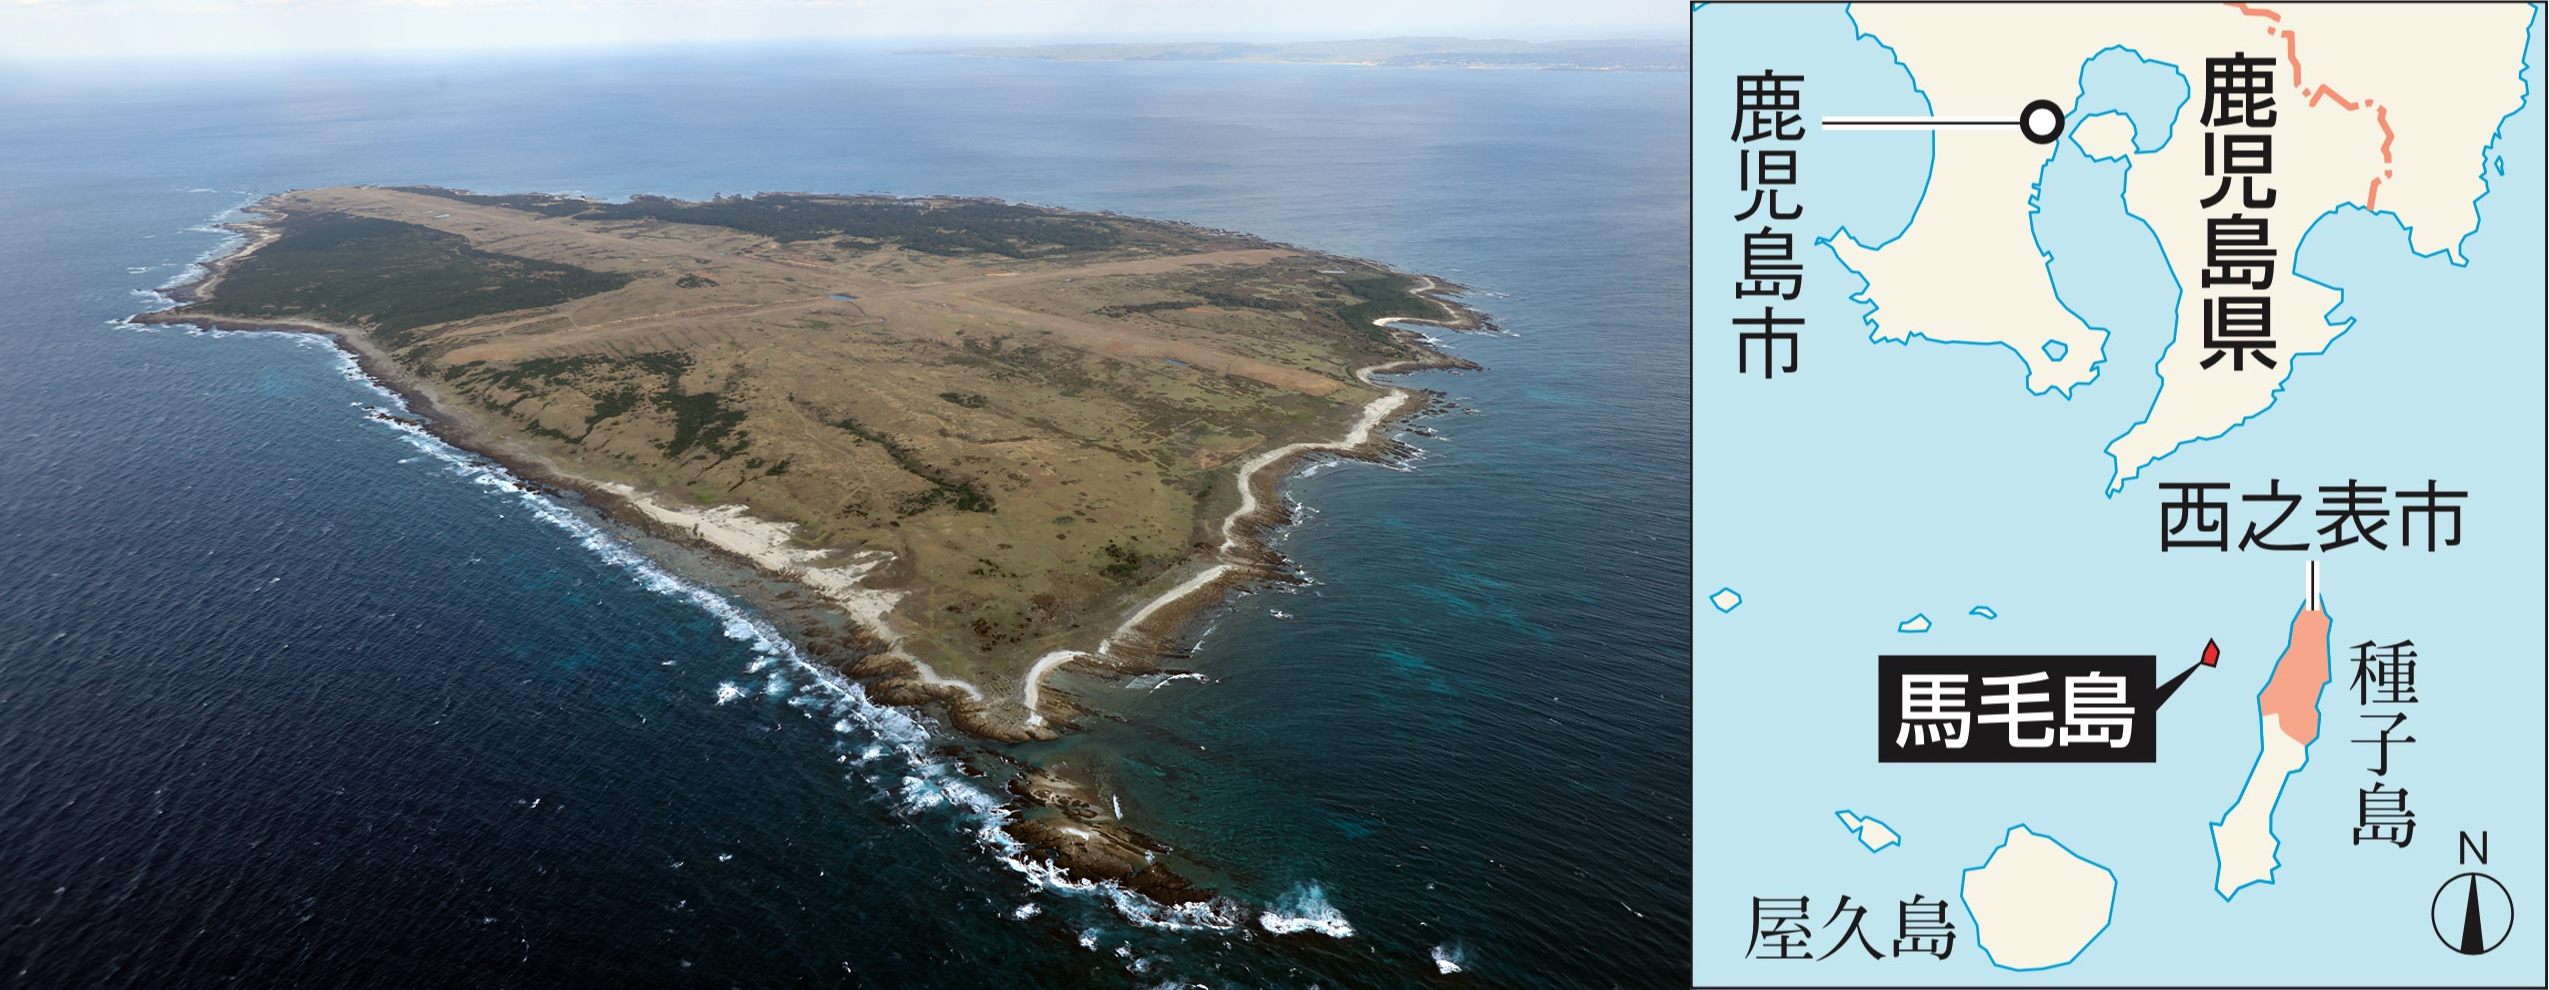 写真・図版 : 種子島の西方に位置する無人島の馬毛島